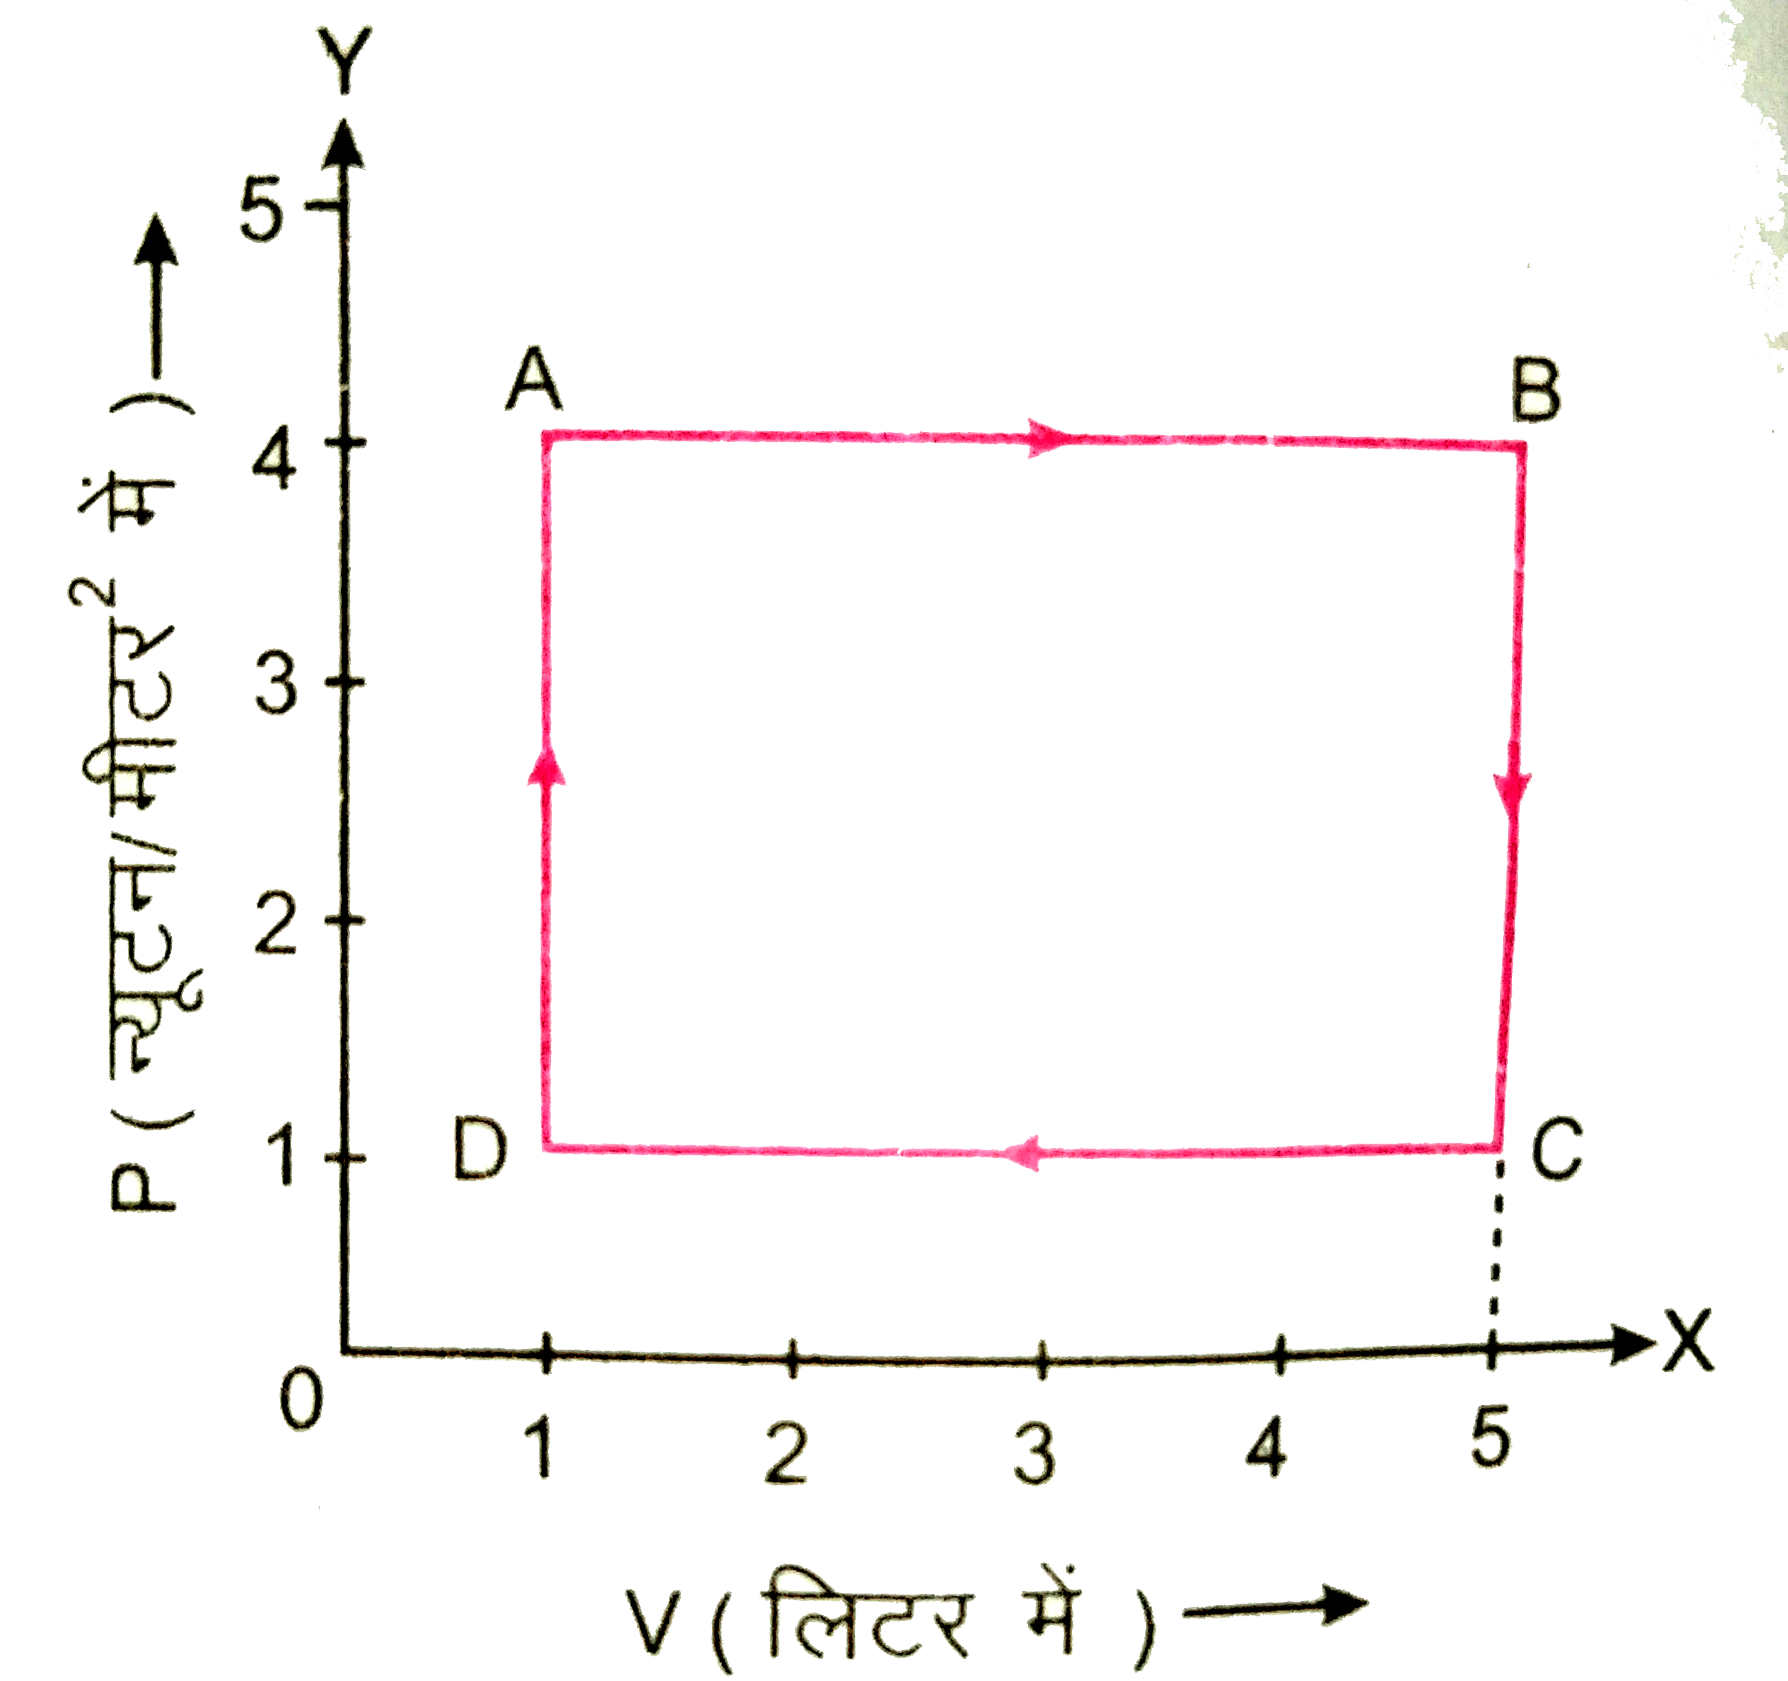 चित्र  में किसी गैस की अवस्था परिवर्तन के लिए P-V आरेख प्रदर्शित है। गणना कीजिए। A से B तक अवस्था परिवर्तन में किया गया कार्य |